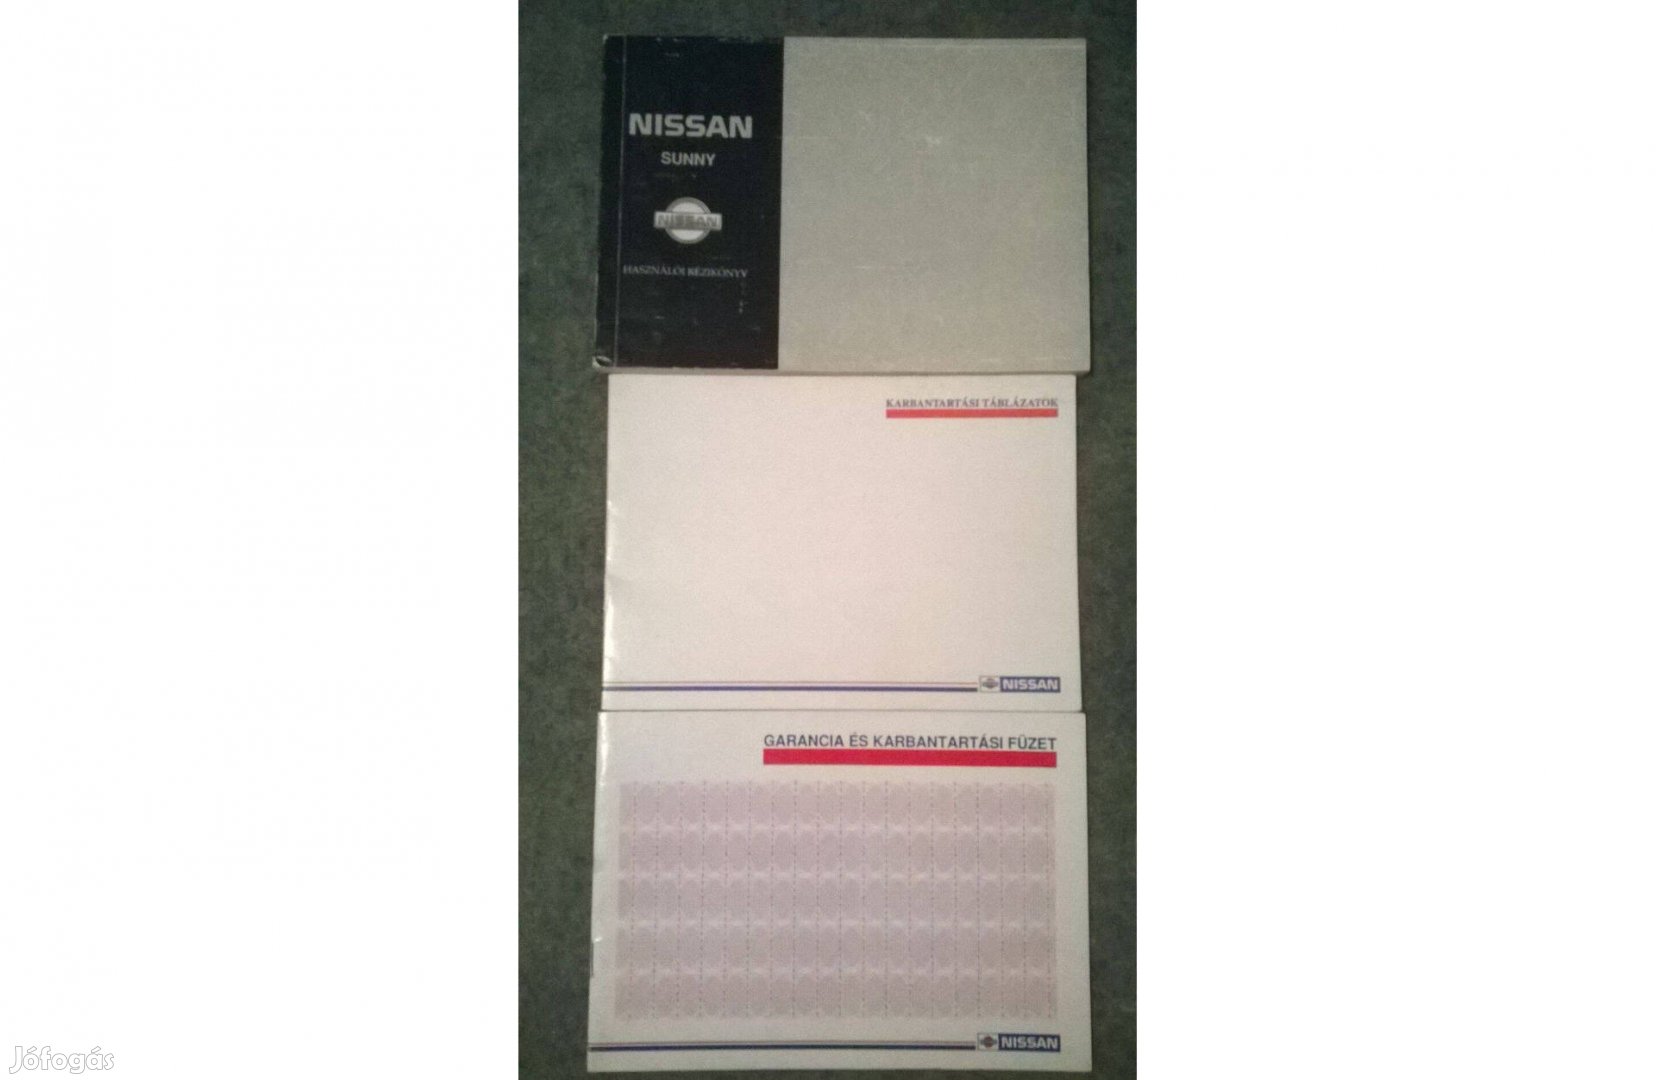 Nissan Sunny kézikönyv, garancia és karbantartási füzet - 1992